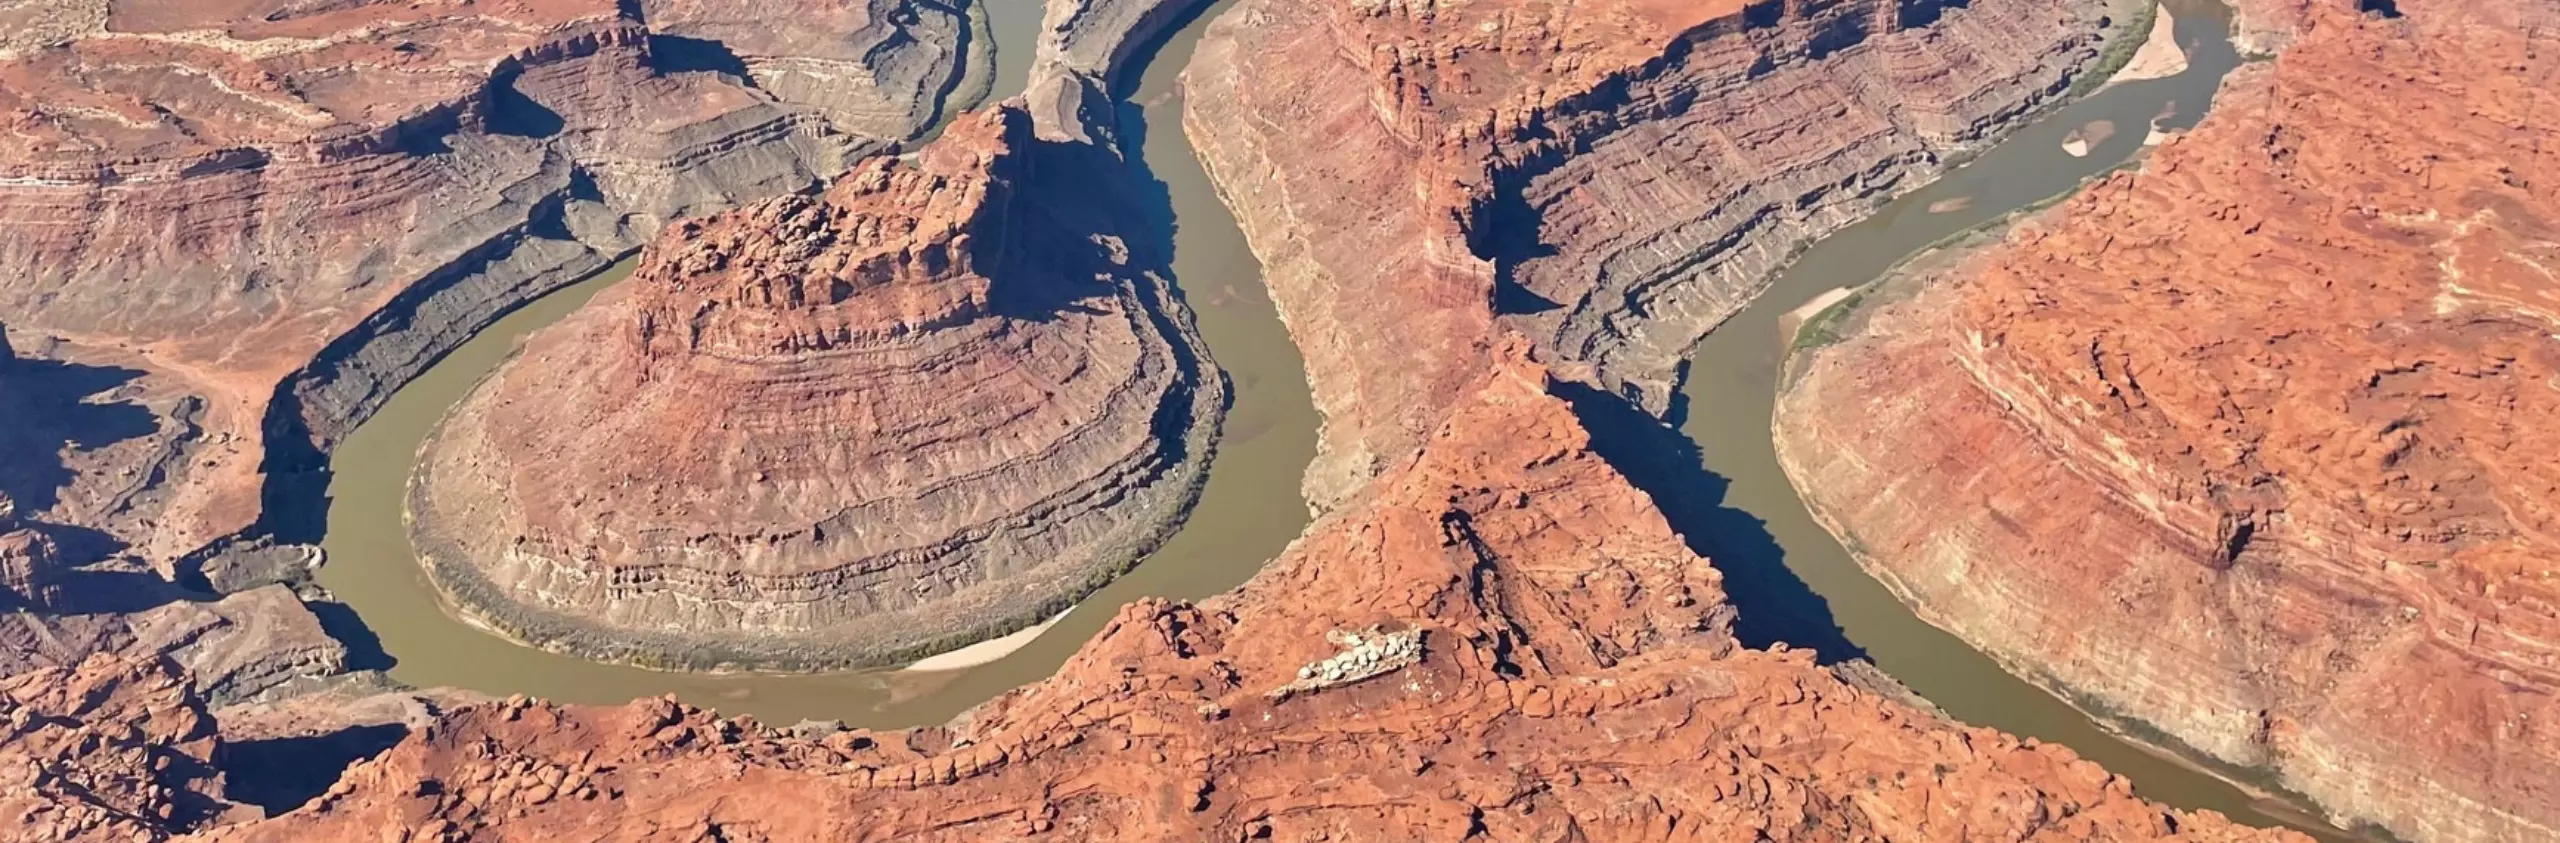 bird's eye view of a river through canyonlands